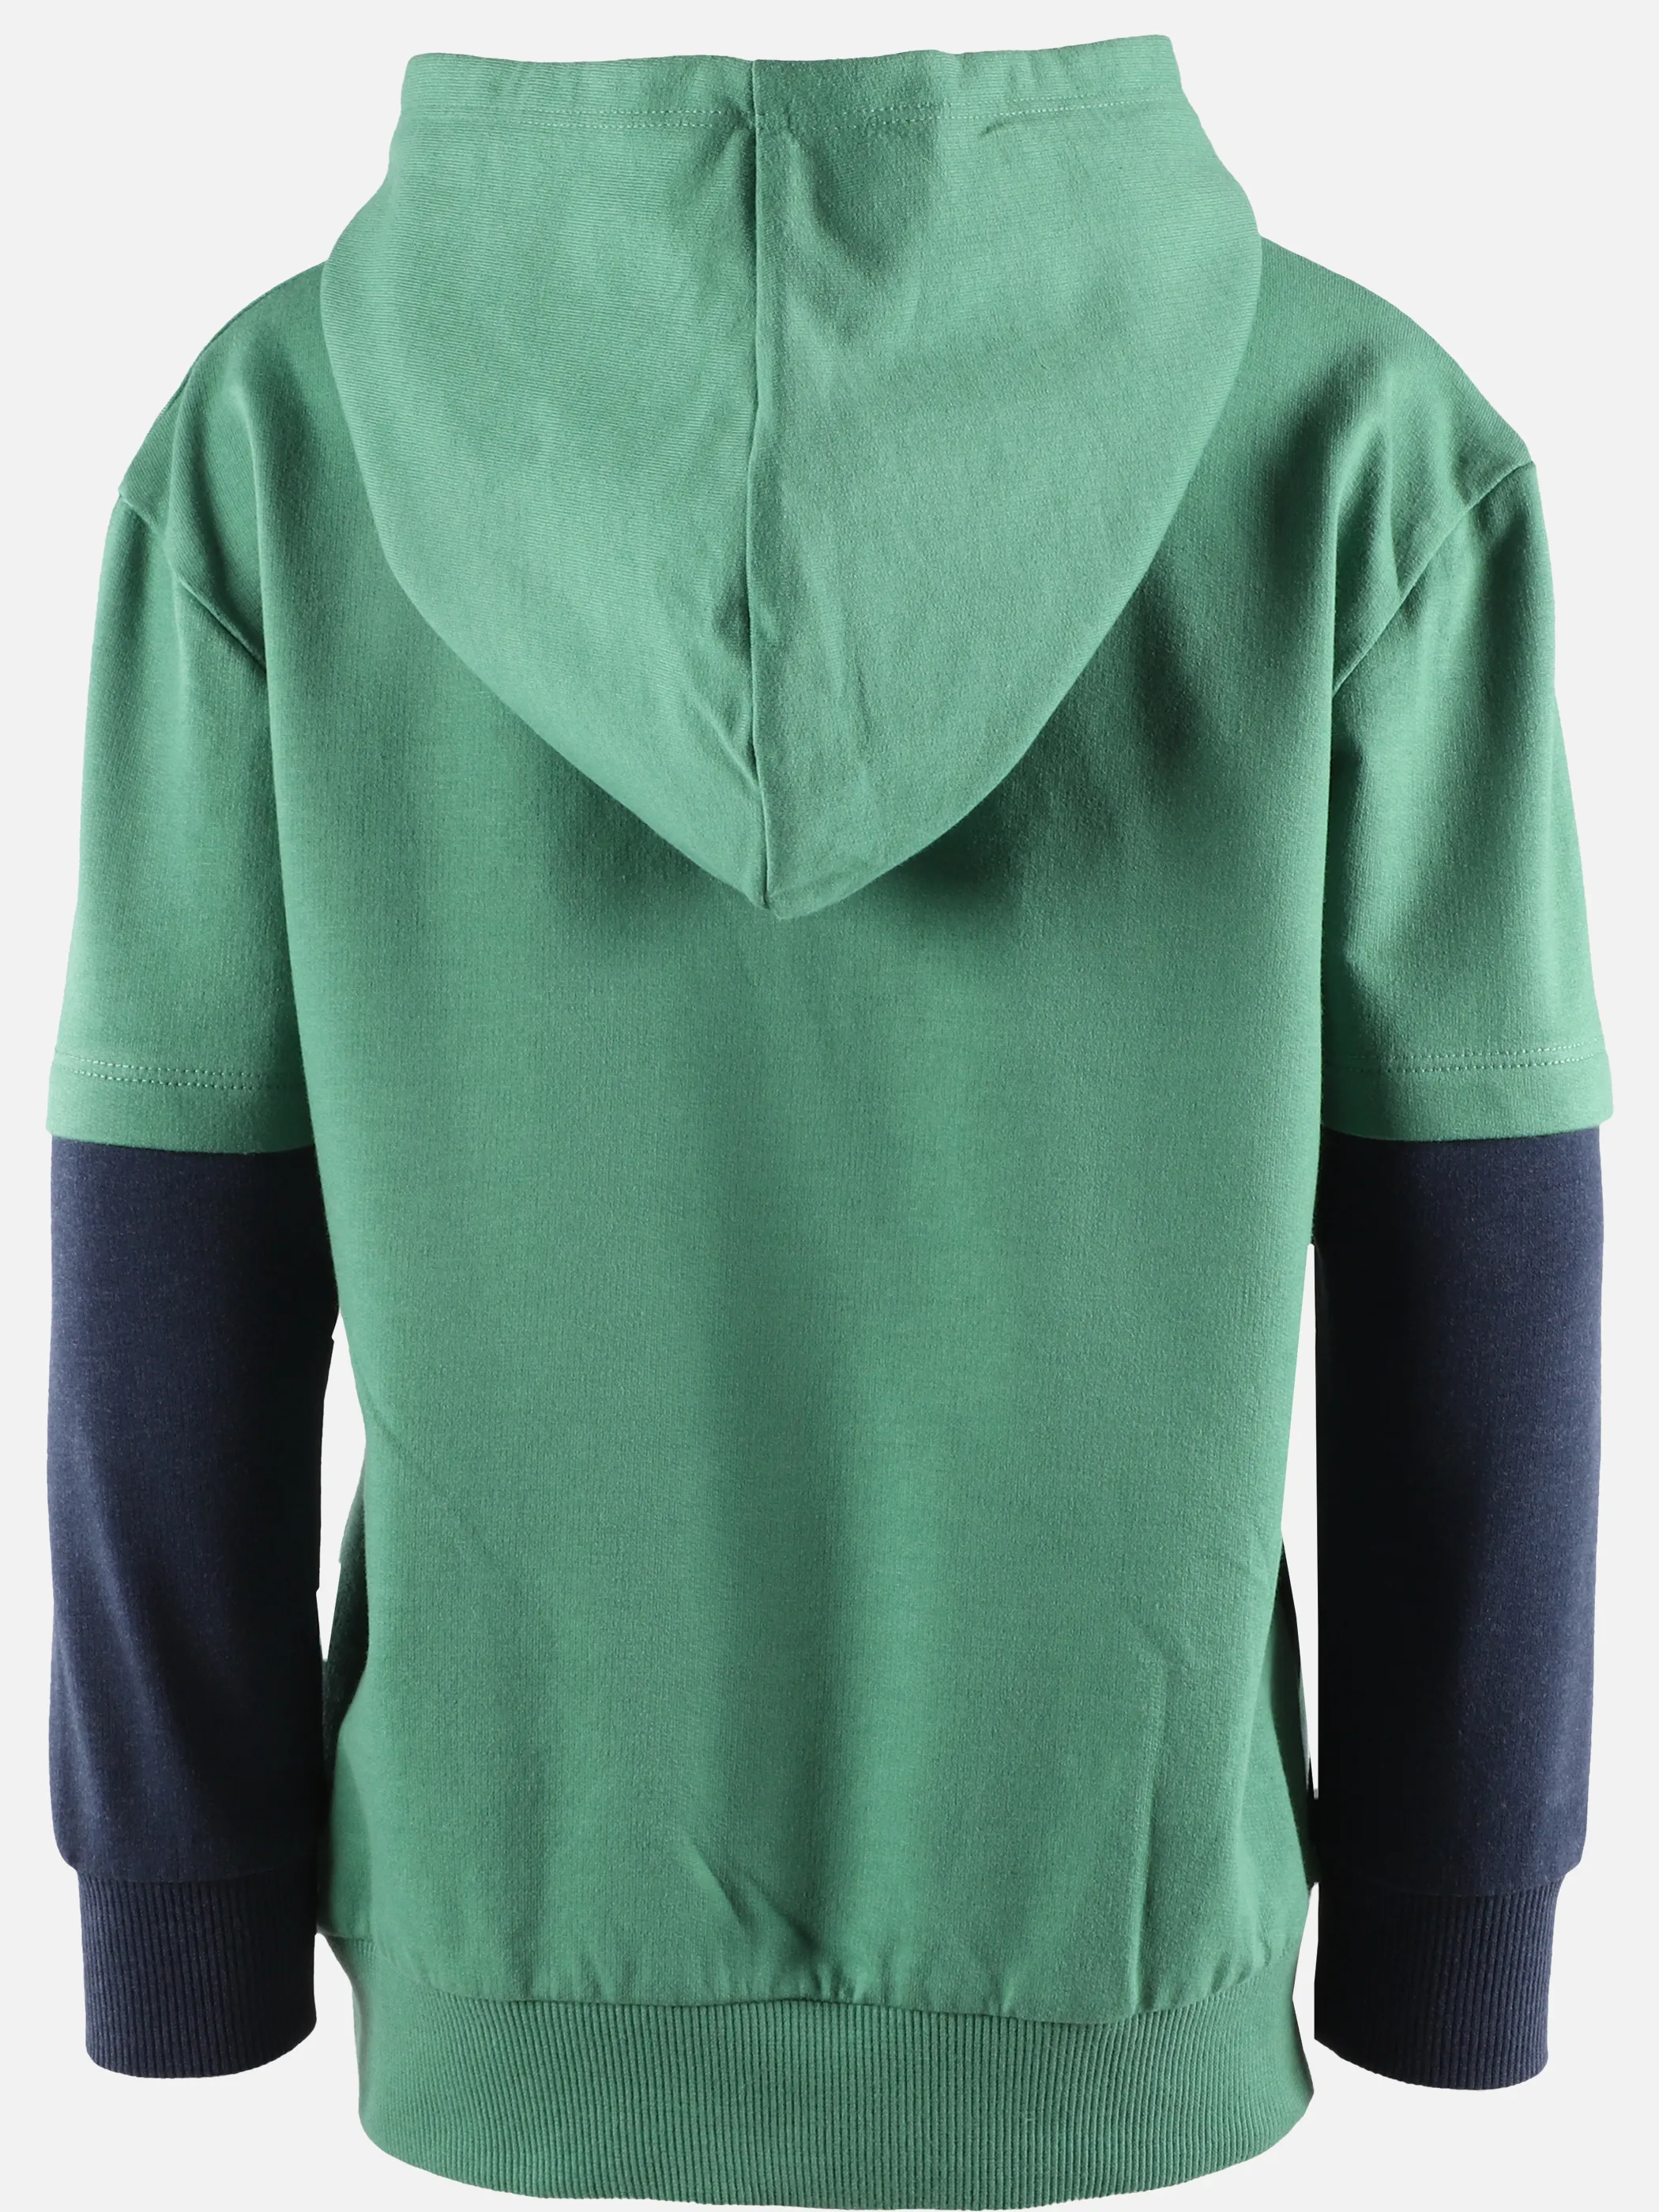 Stop + Go KJ Sweatshirt mit Kapuze in grün mit Frontdruck Grün 891495 GRÜN 2